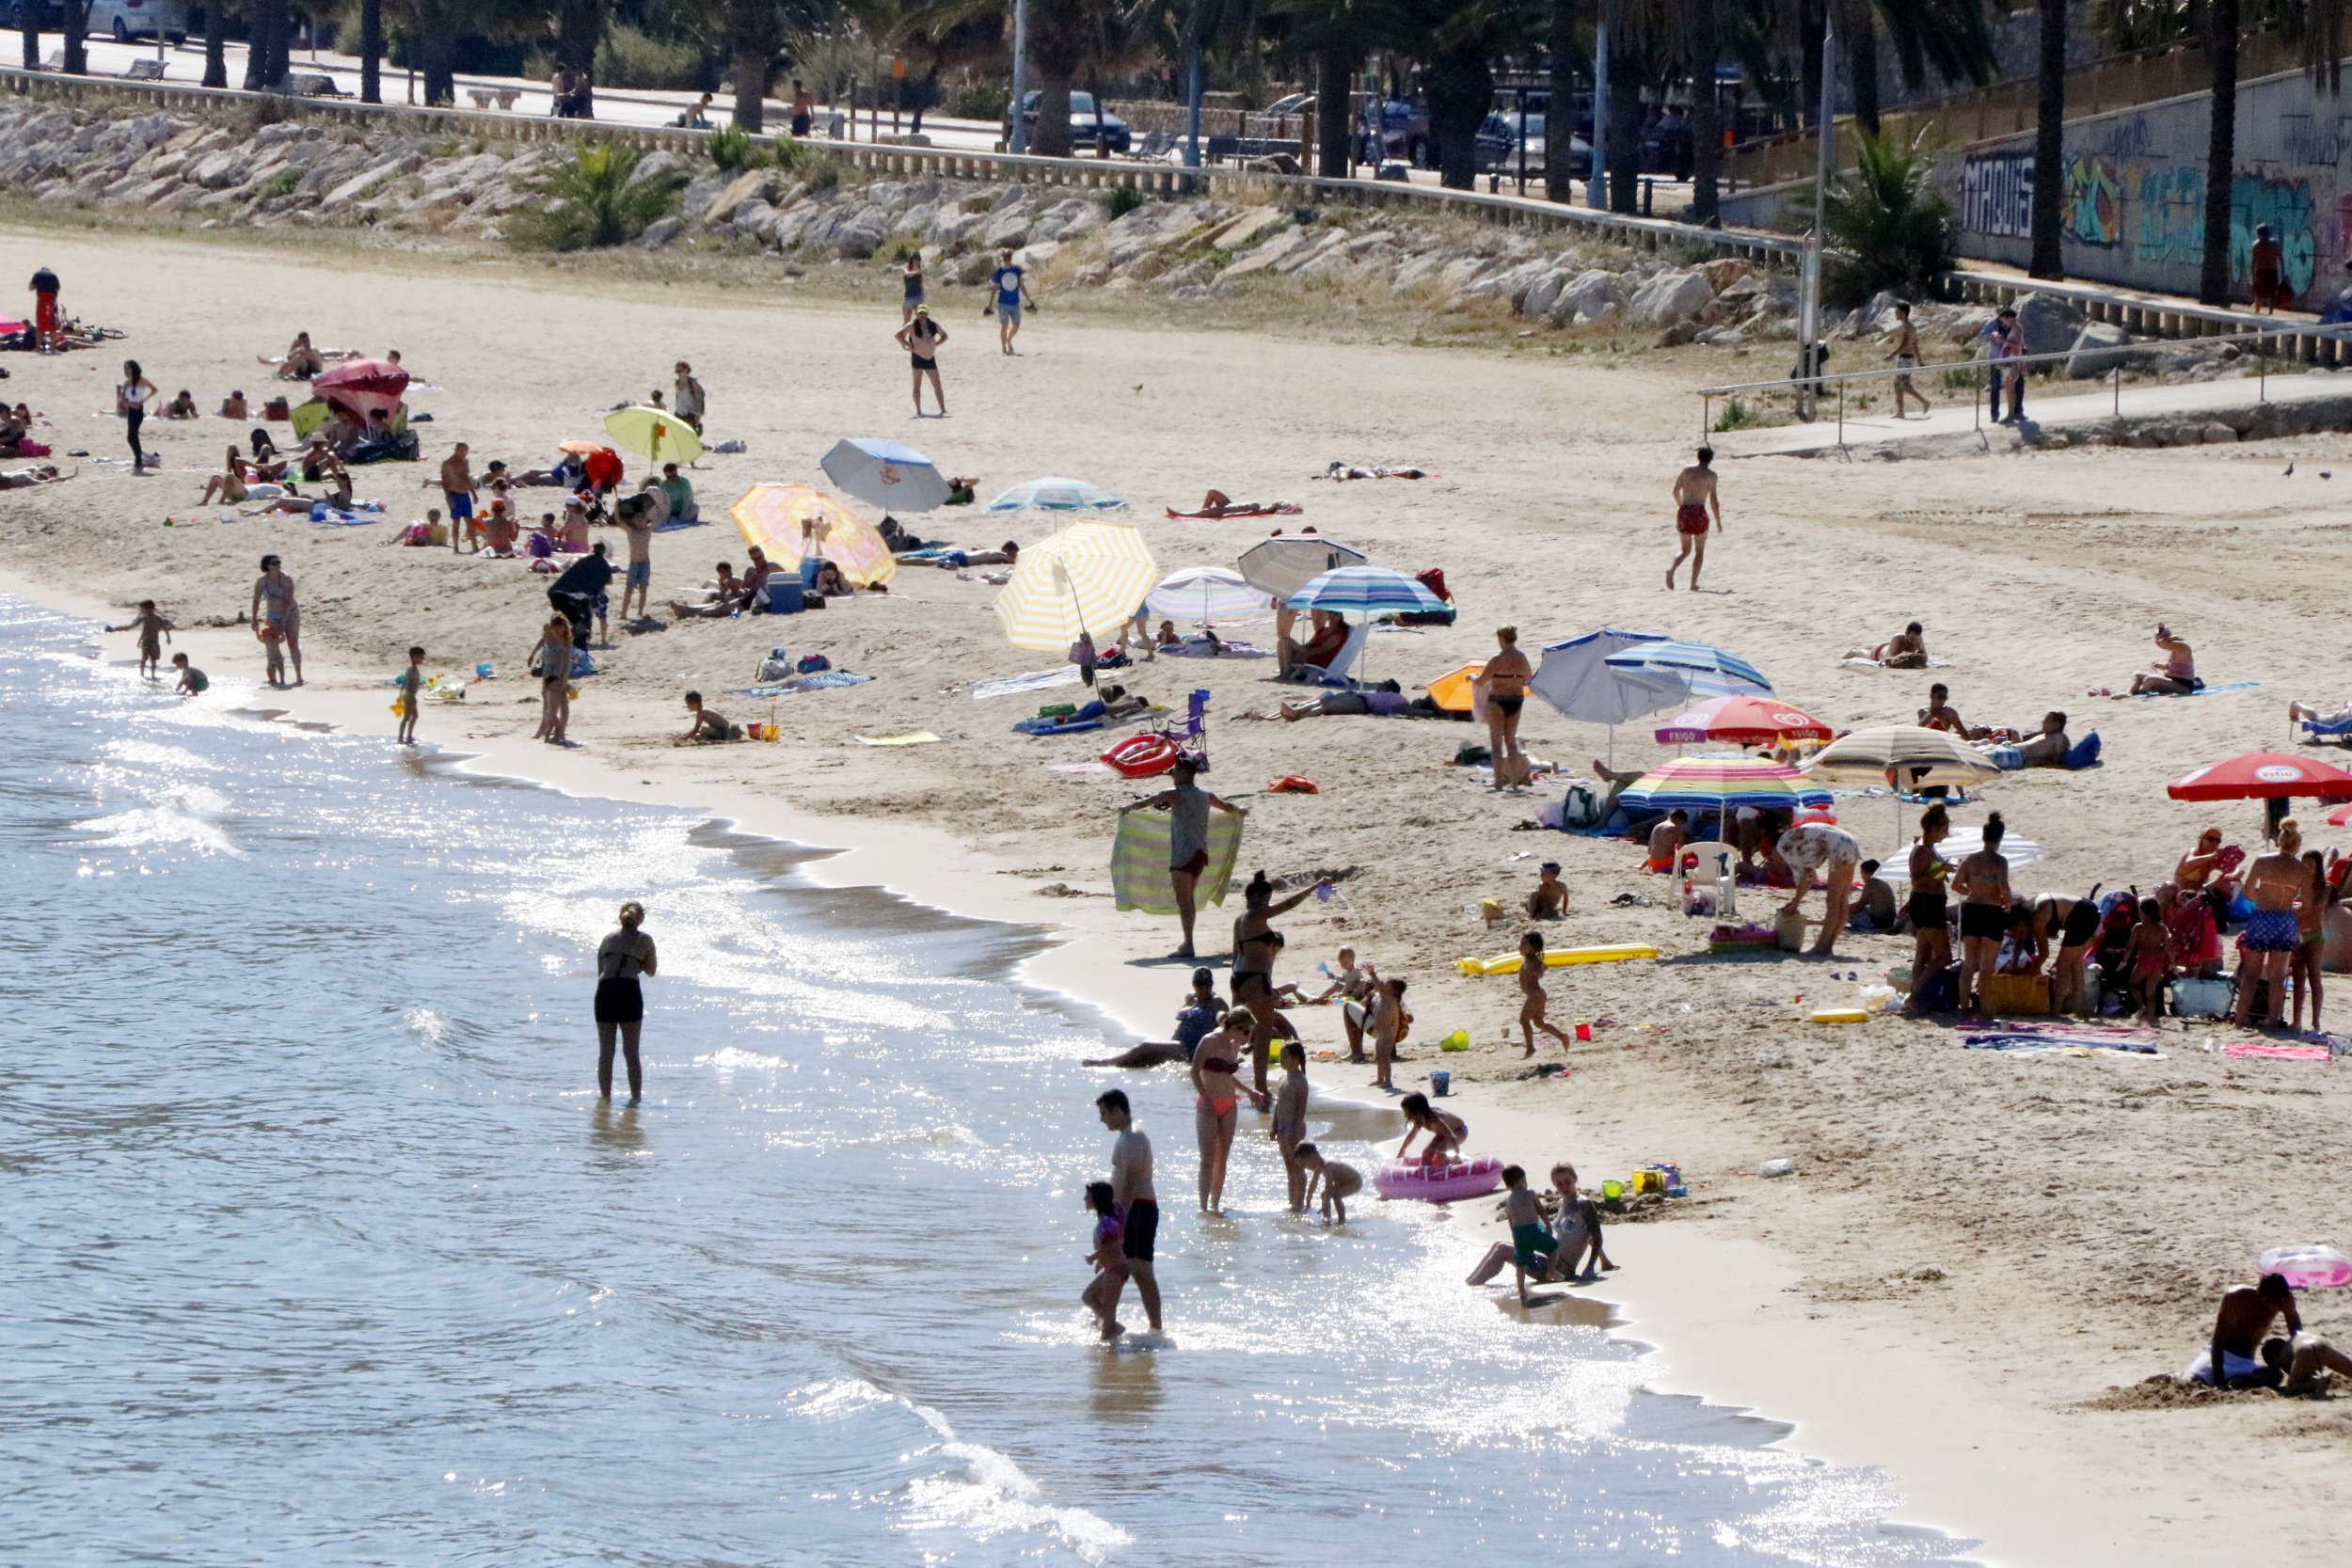 Busquen un noi de 18 anys desaparegut a la platja del Miracle de Tarragona